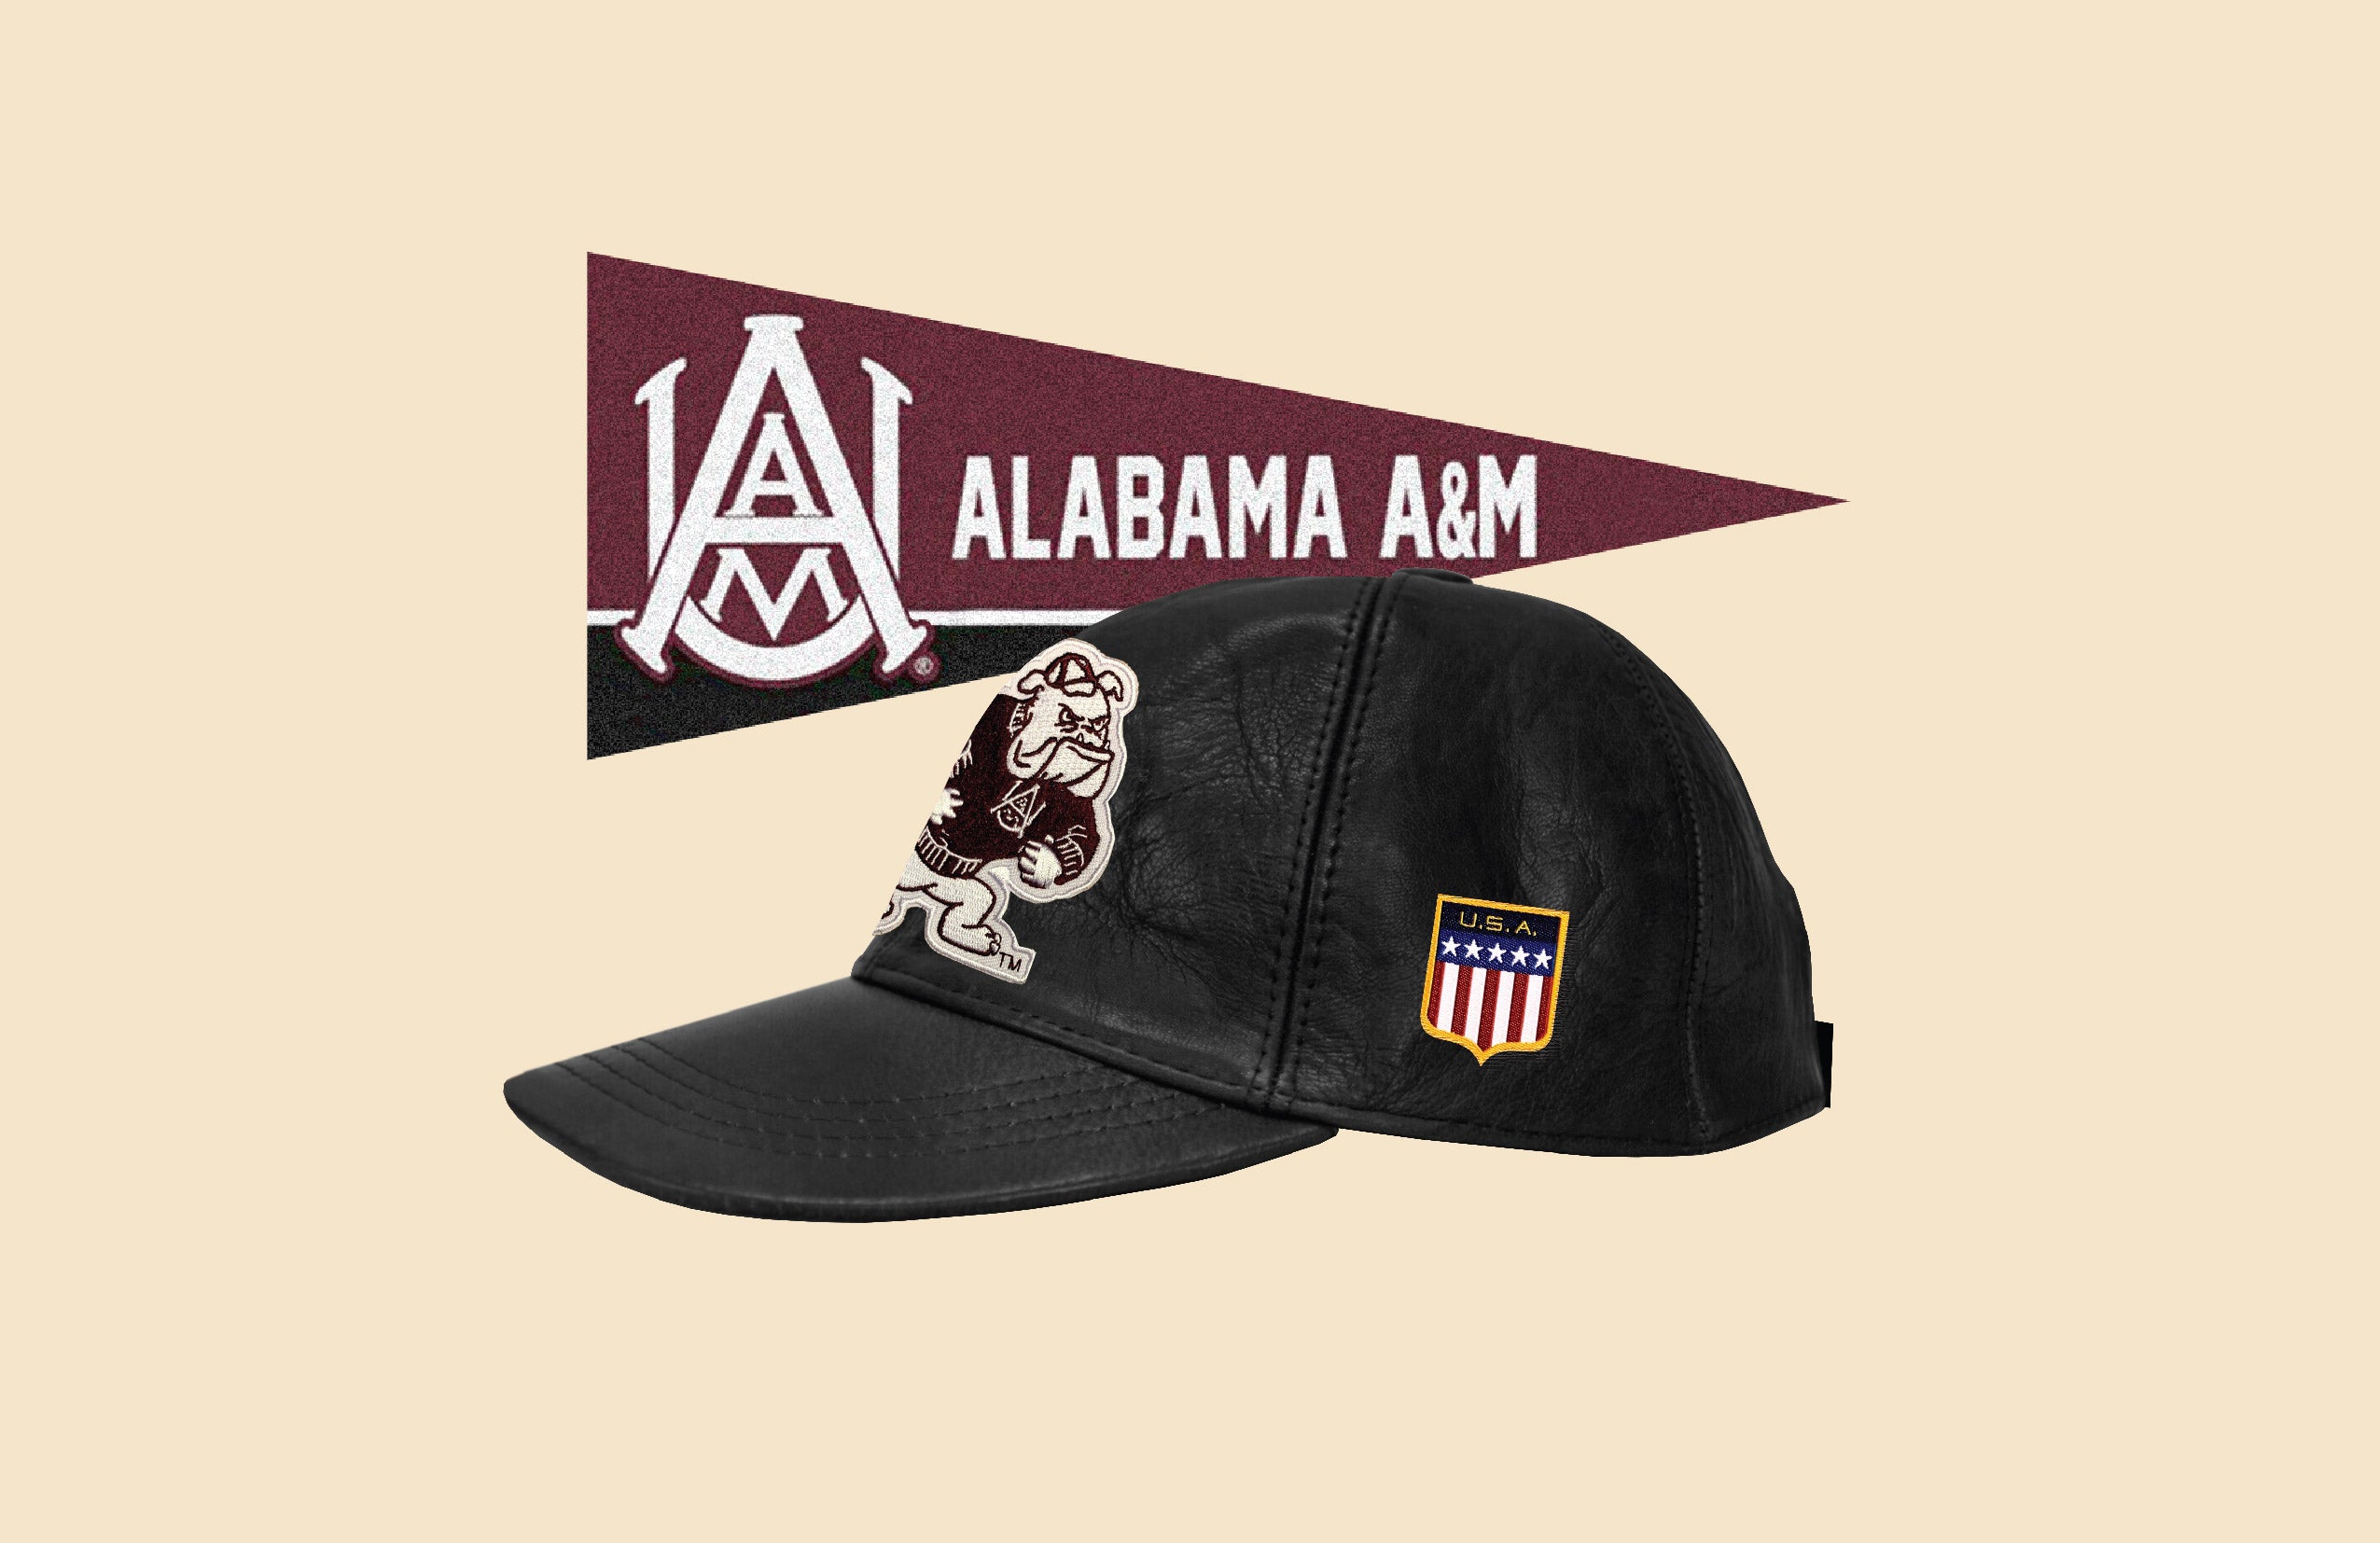 Genuine Leather HBCU Patch Cap - Alabama A&M [AAMU]